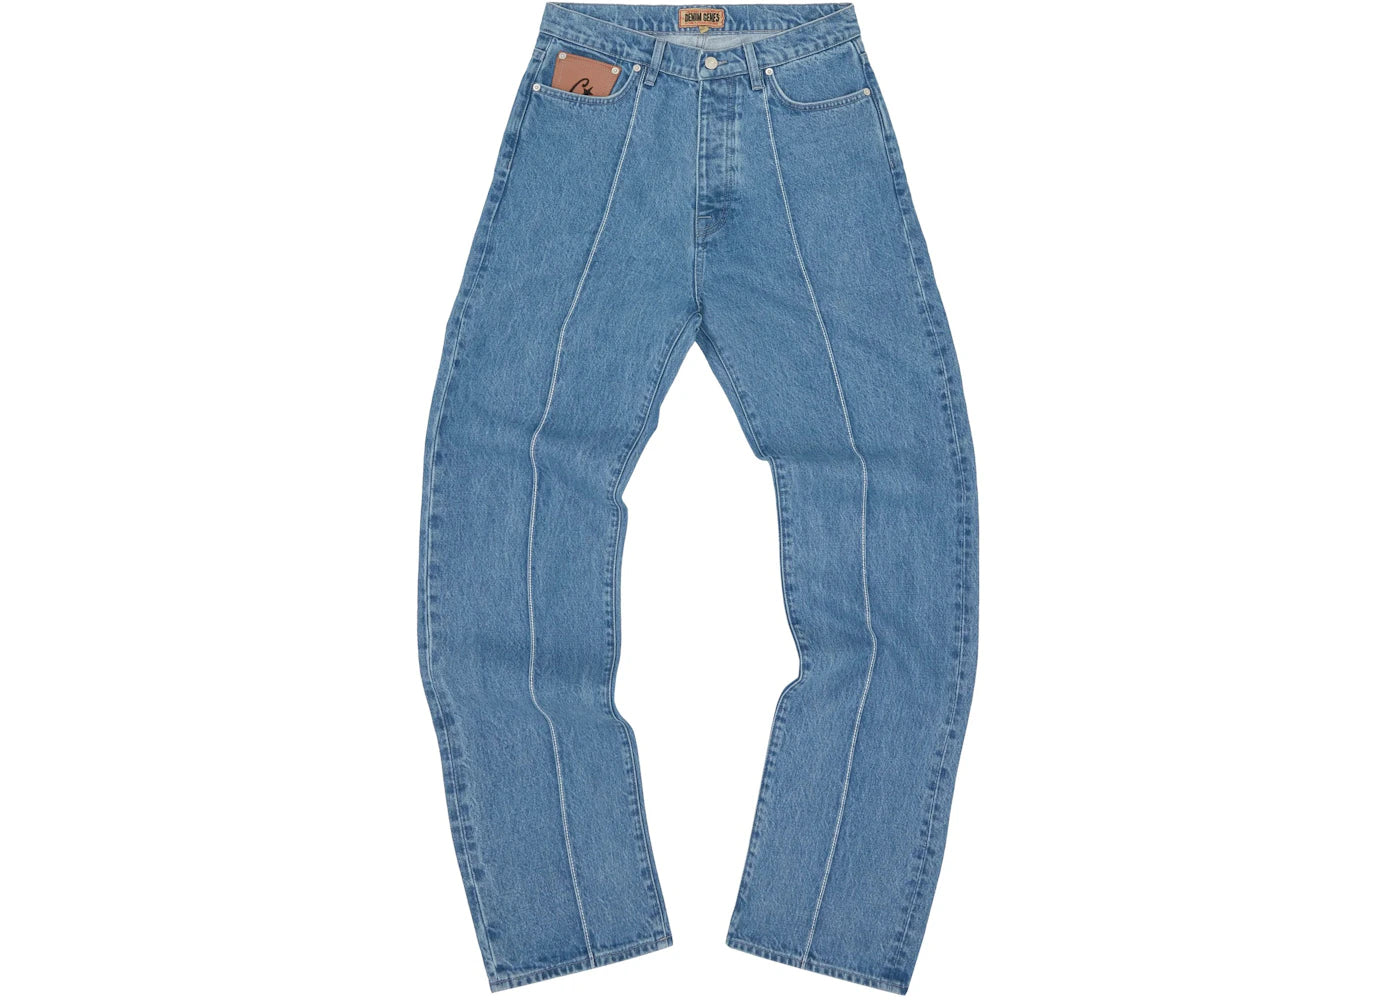 Corteiz C-Star Denim Jeans